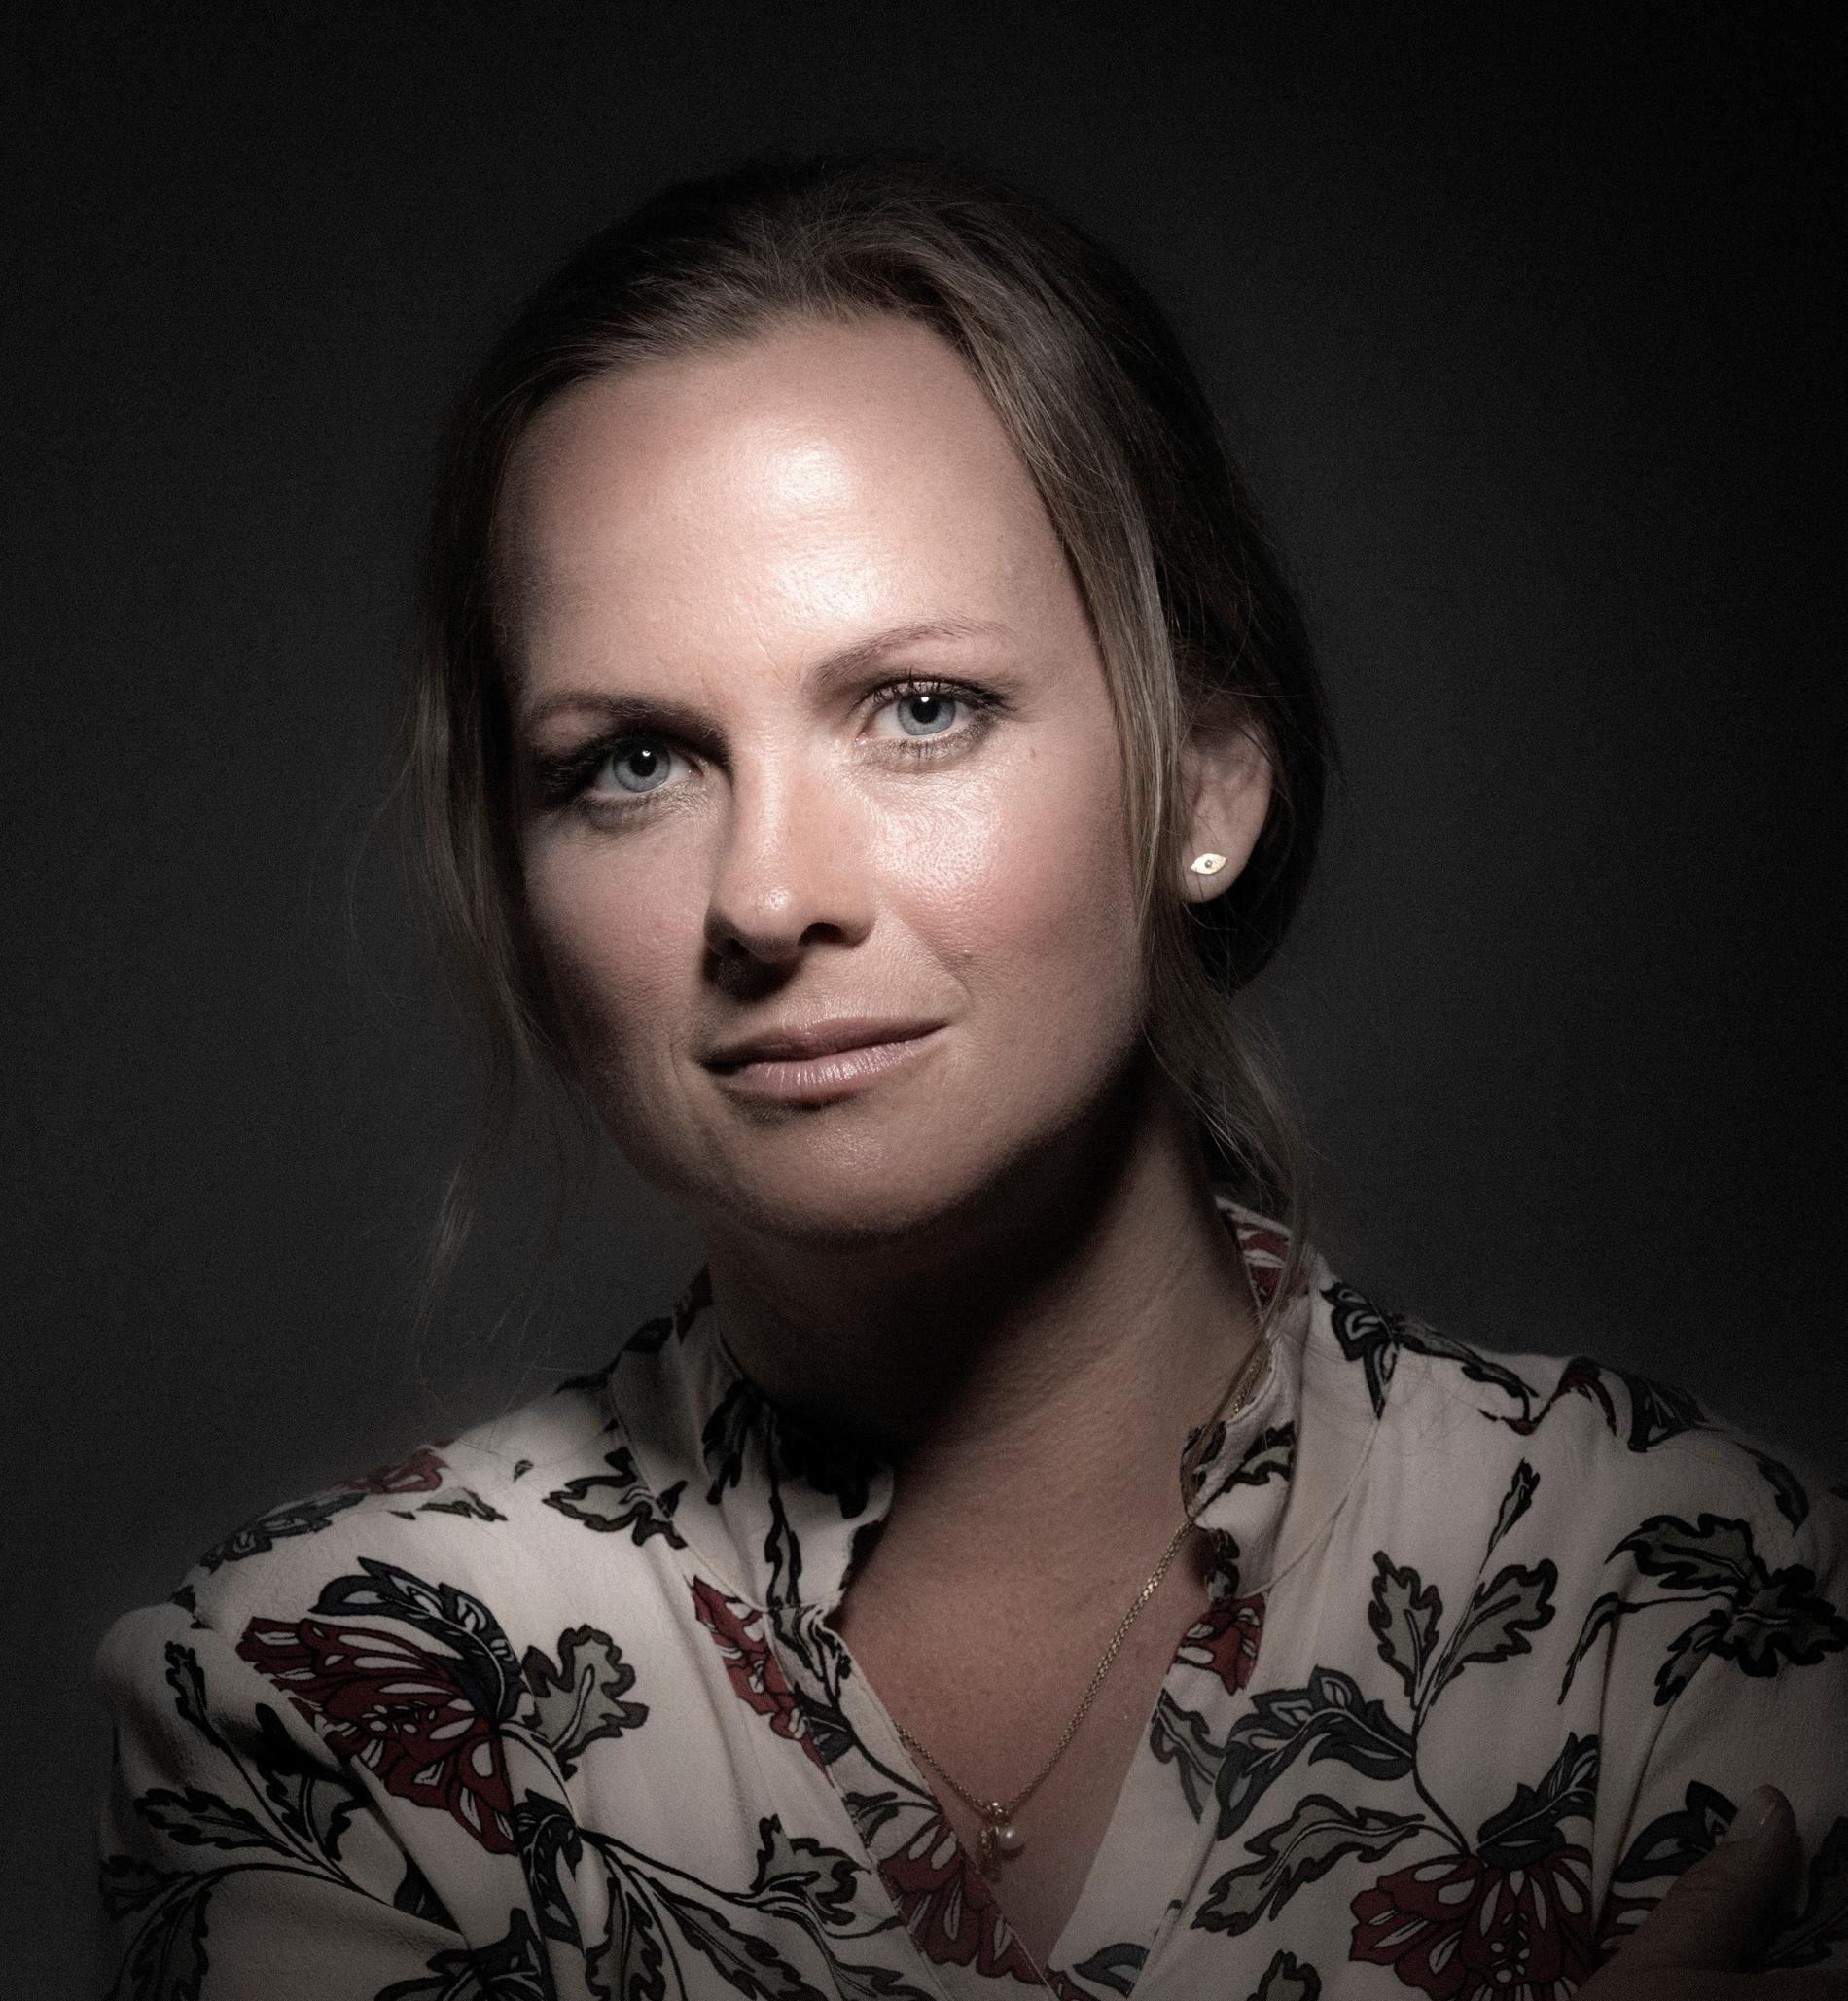 Jeanette Varberg är en dansk arkeolog och museiintendent. Hon har skrivit både barnböcker och historieverk. För boken Fortidens slagmarker belönades hon med Rosenkjærpriset 2014.